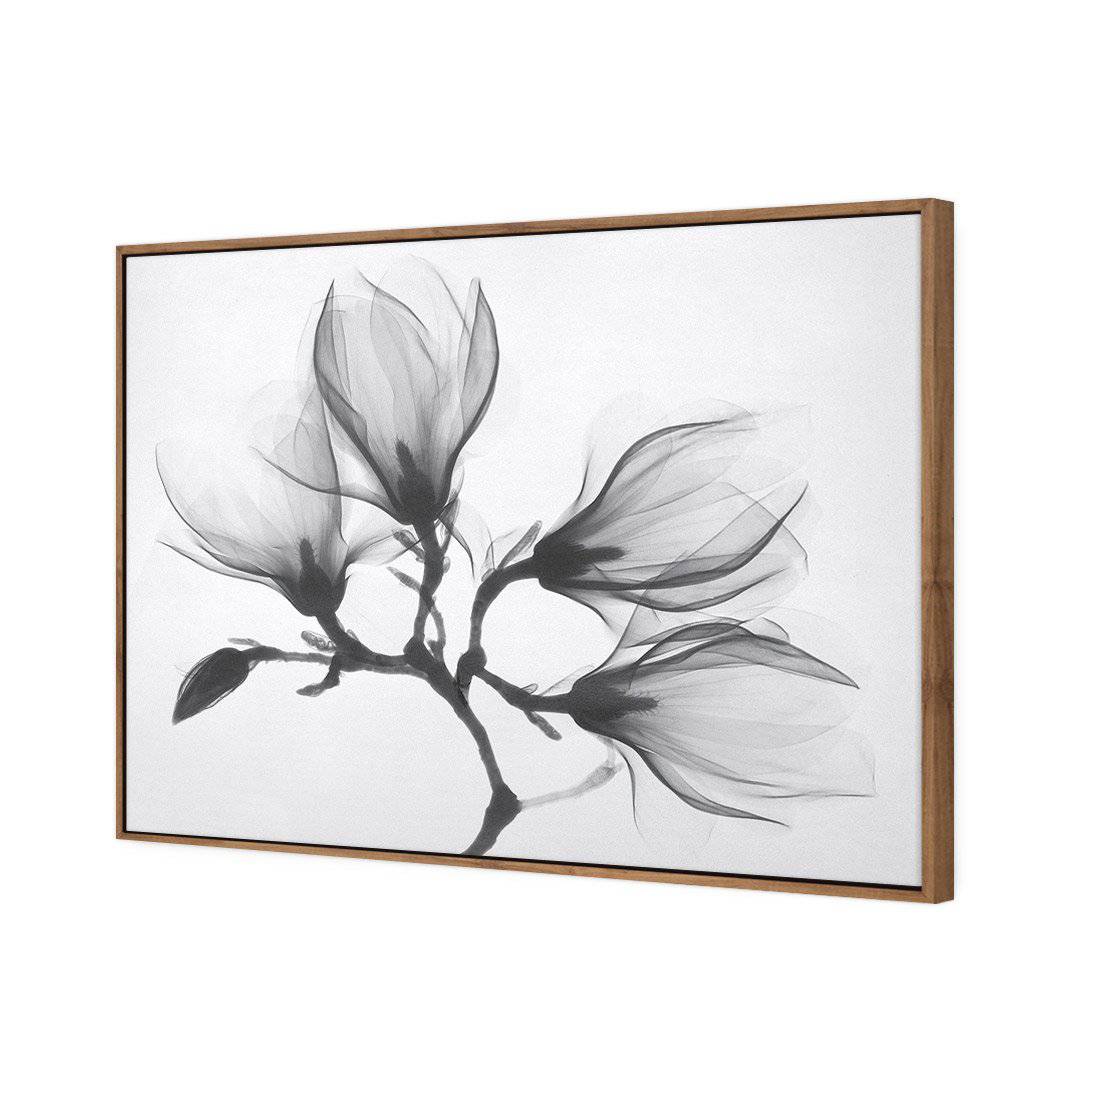 Magnolia Blossoms Canvas Art-Canvas-Wall Art Designs-45x30cm-Canvas - Natural Frame-Wall Art Designs